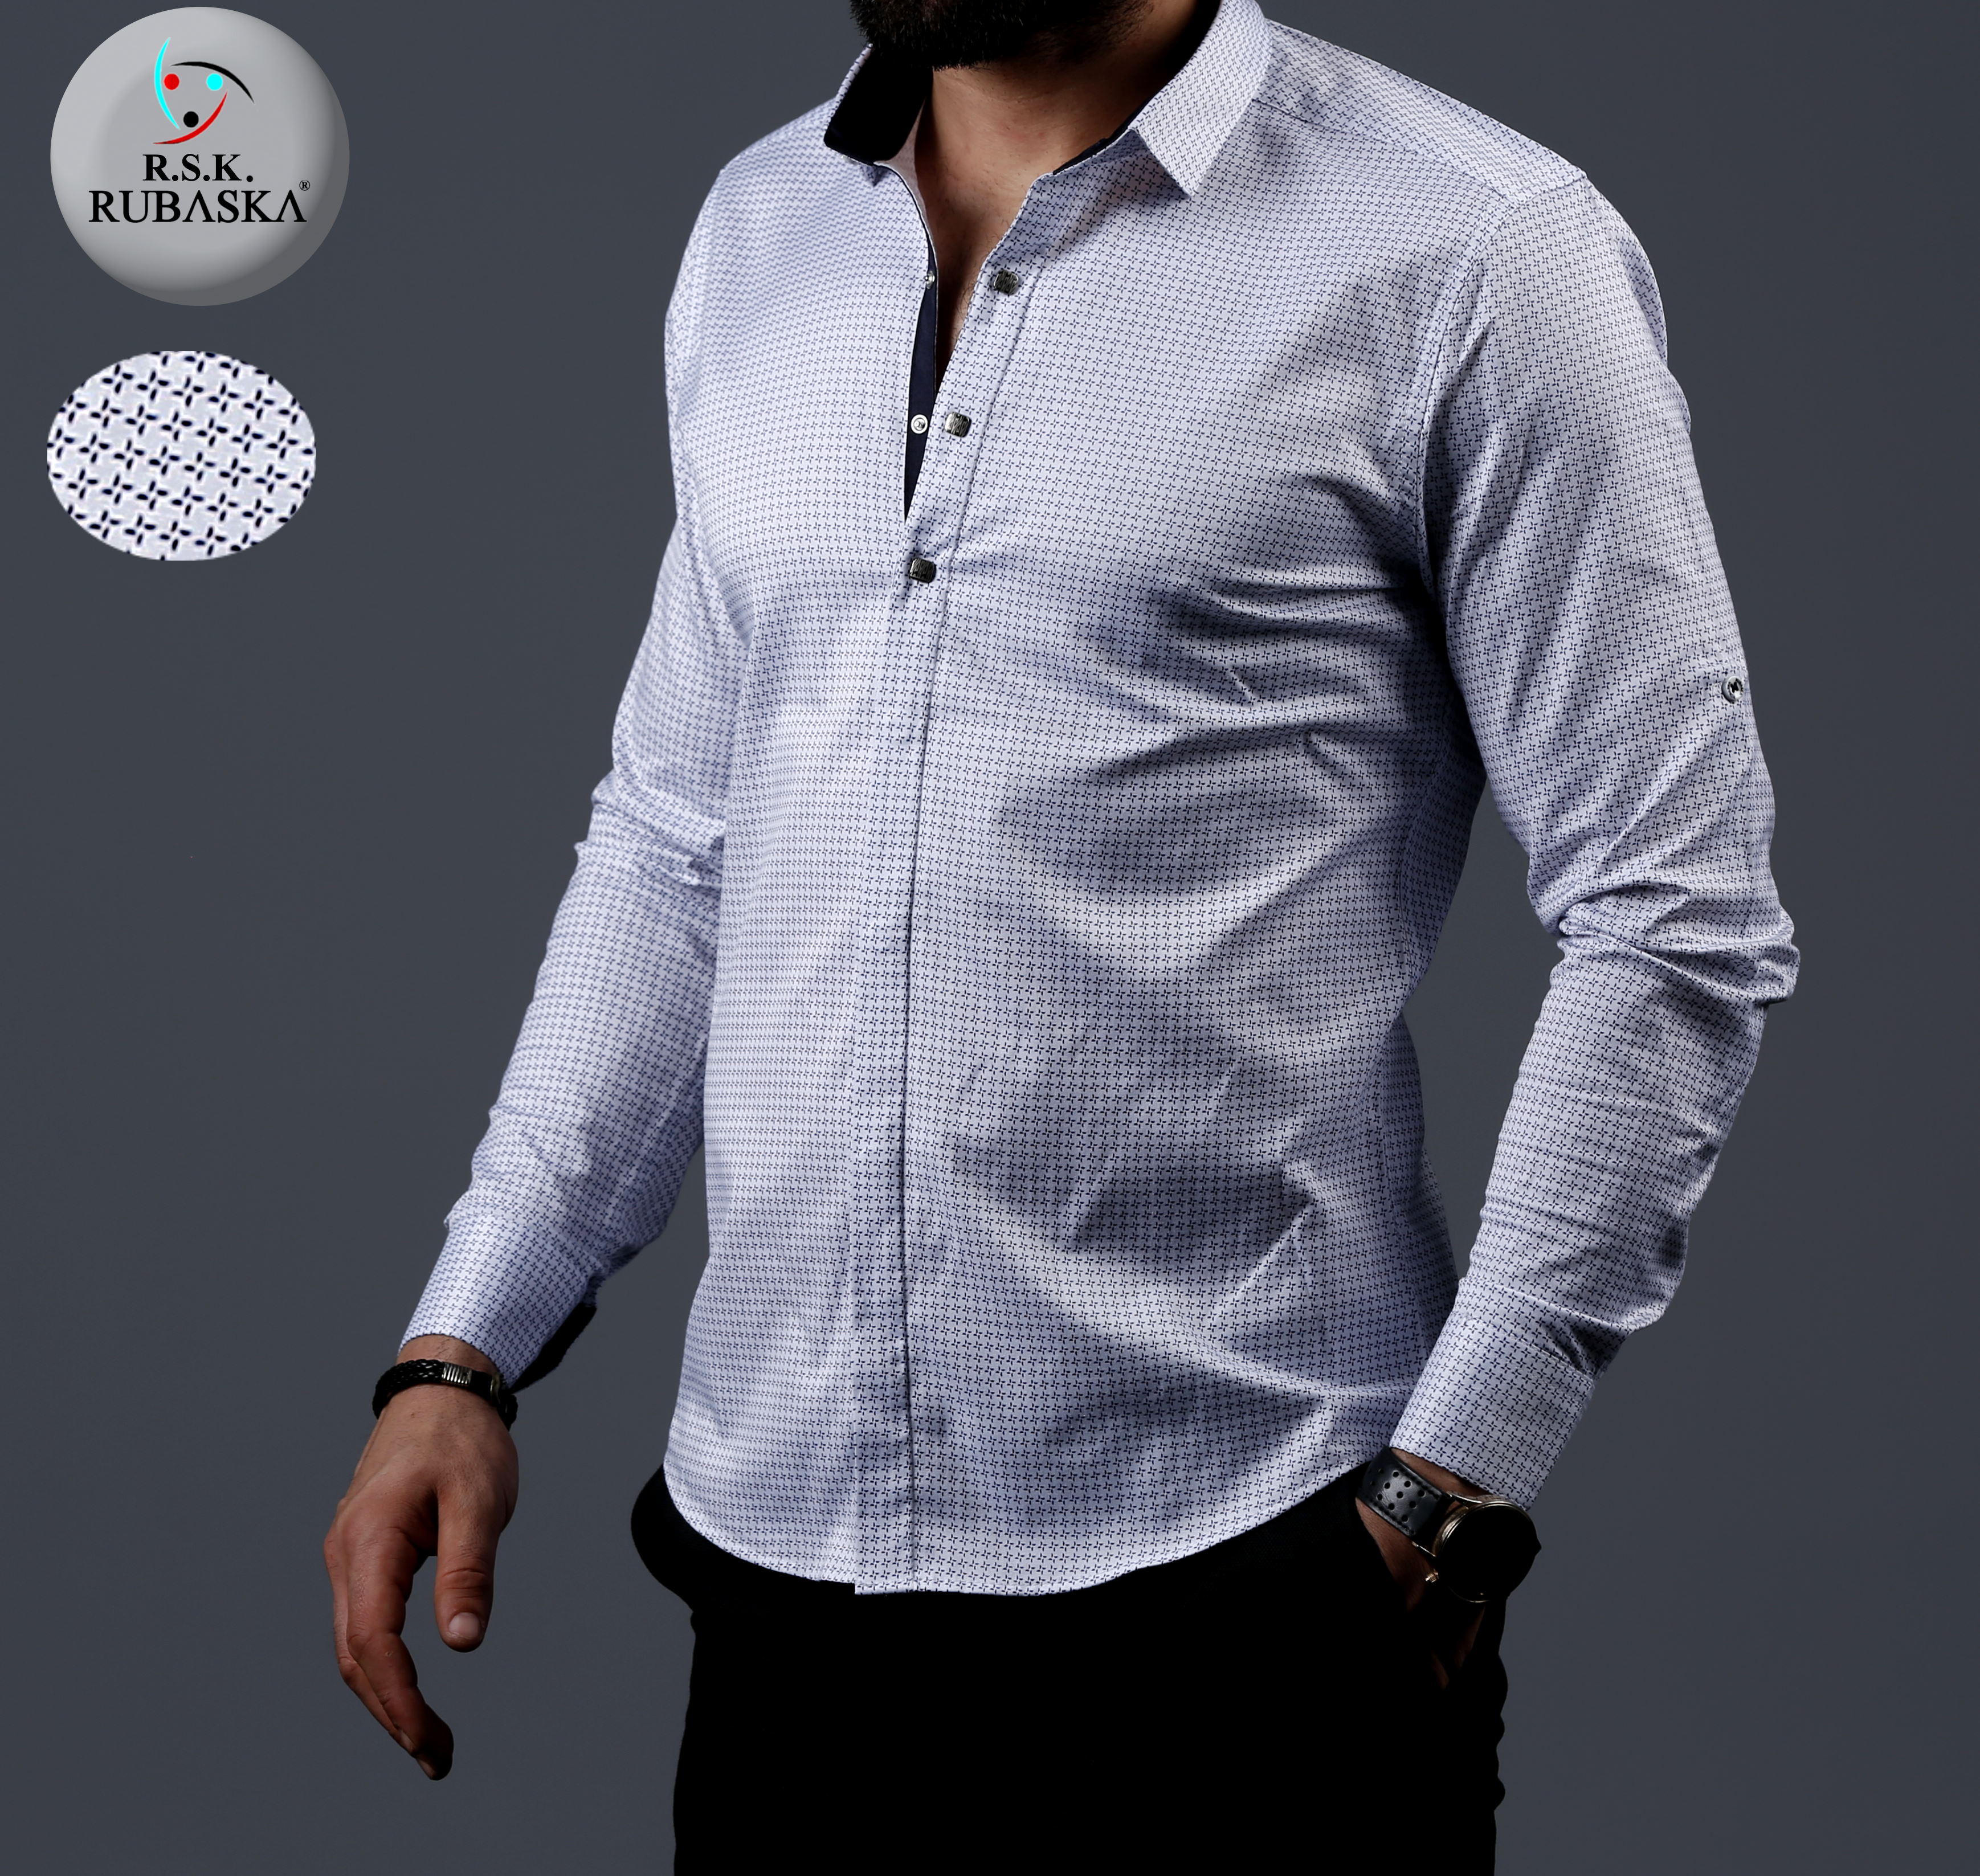 Мужской рубашка самый красивый белый производитель Турция